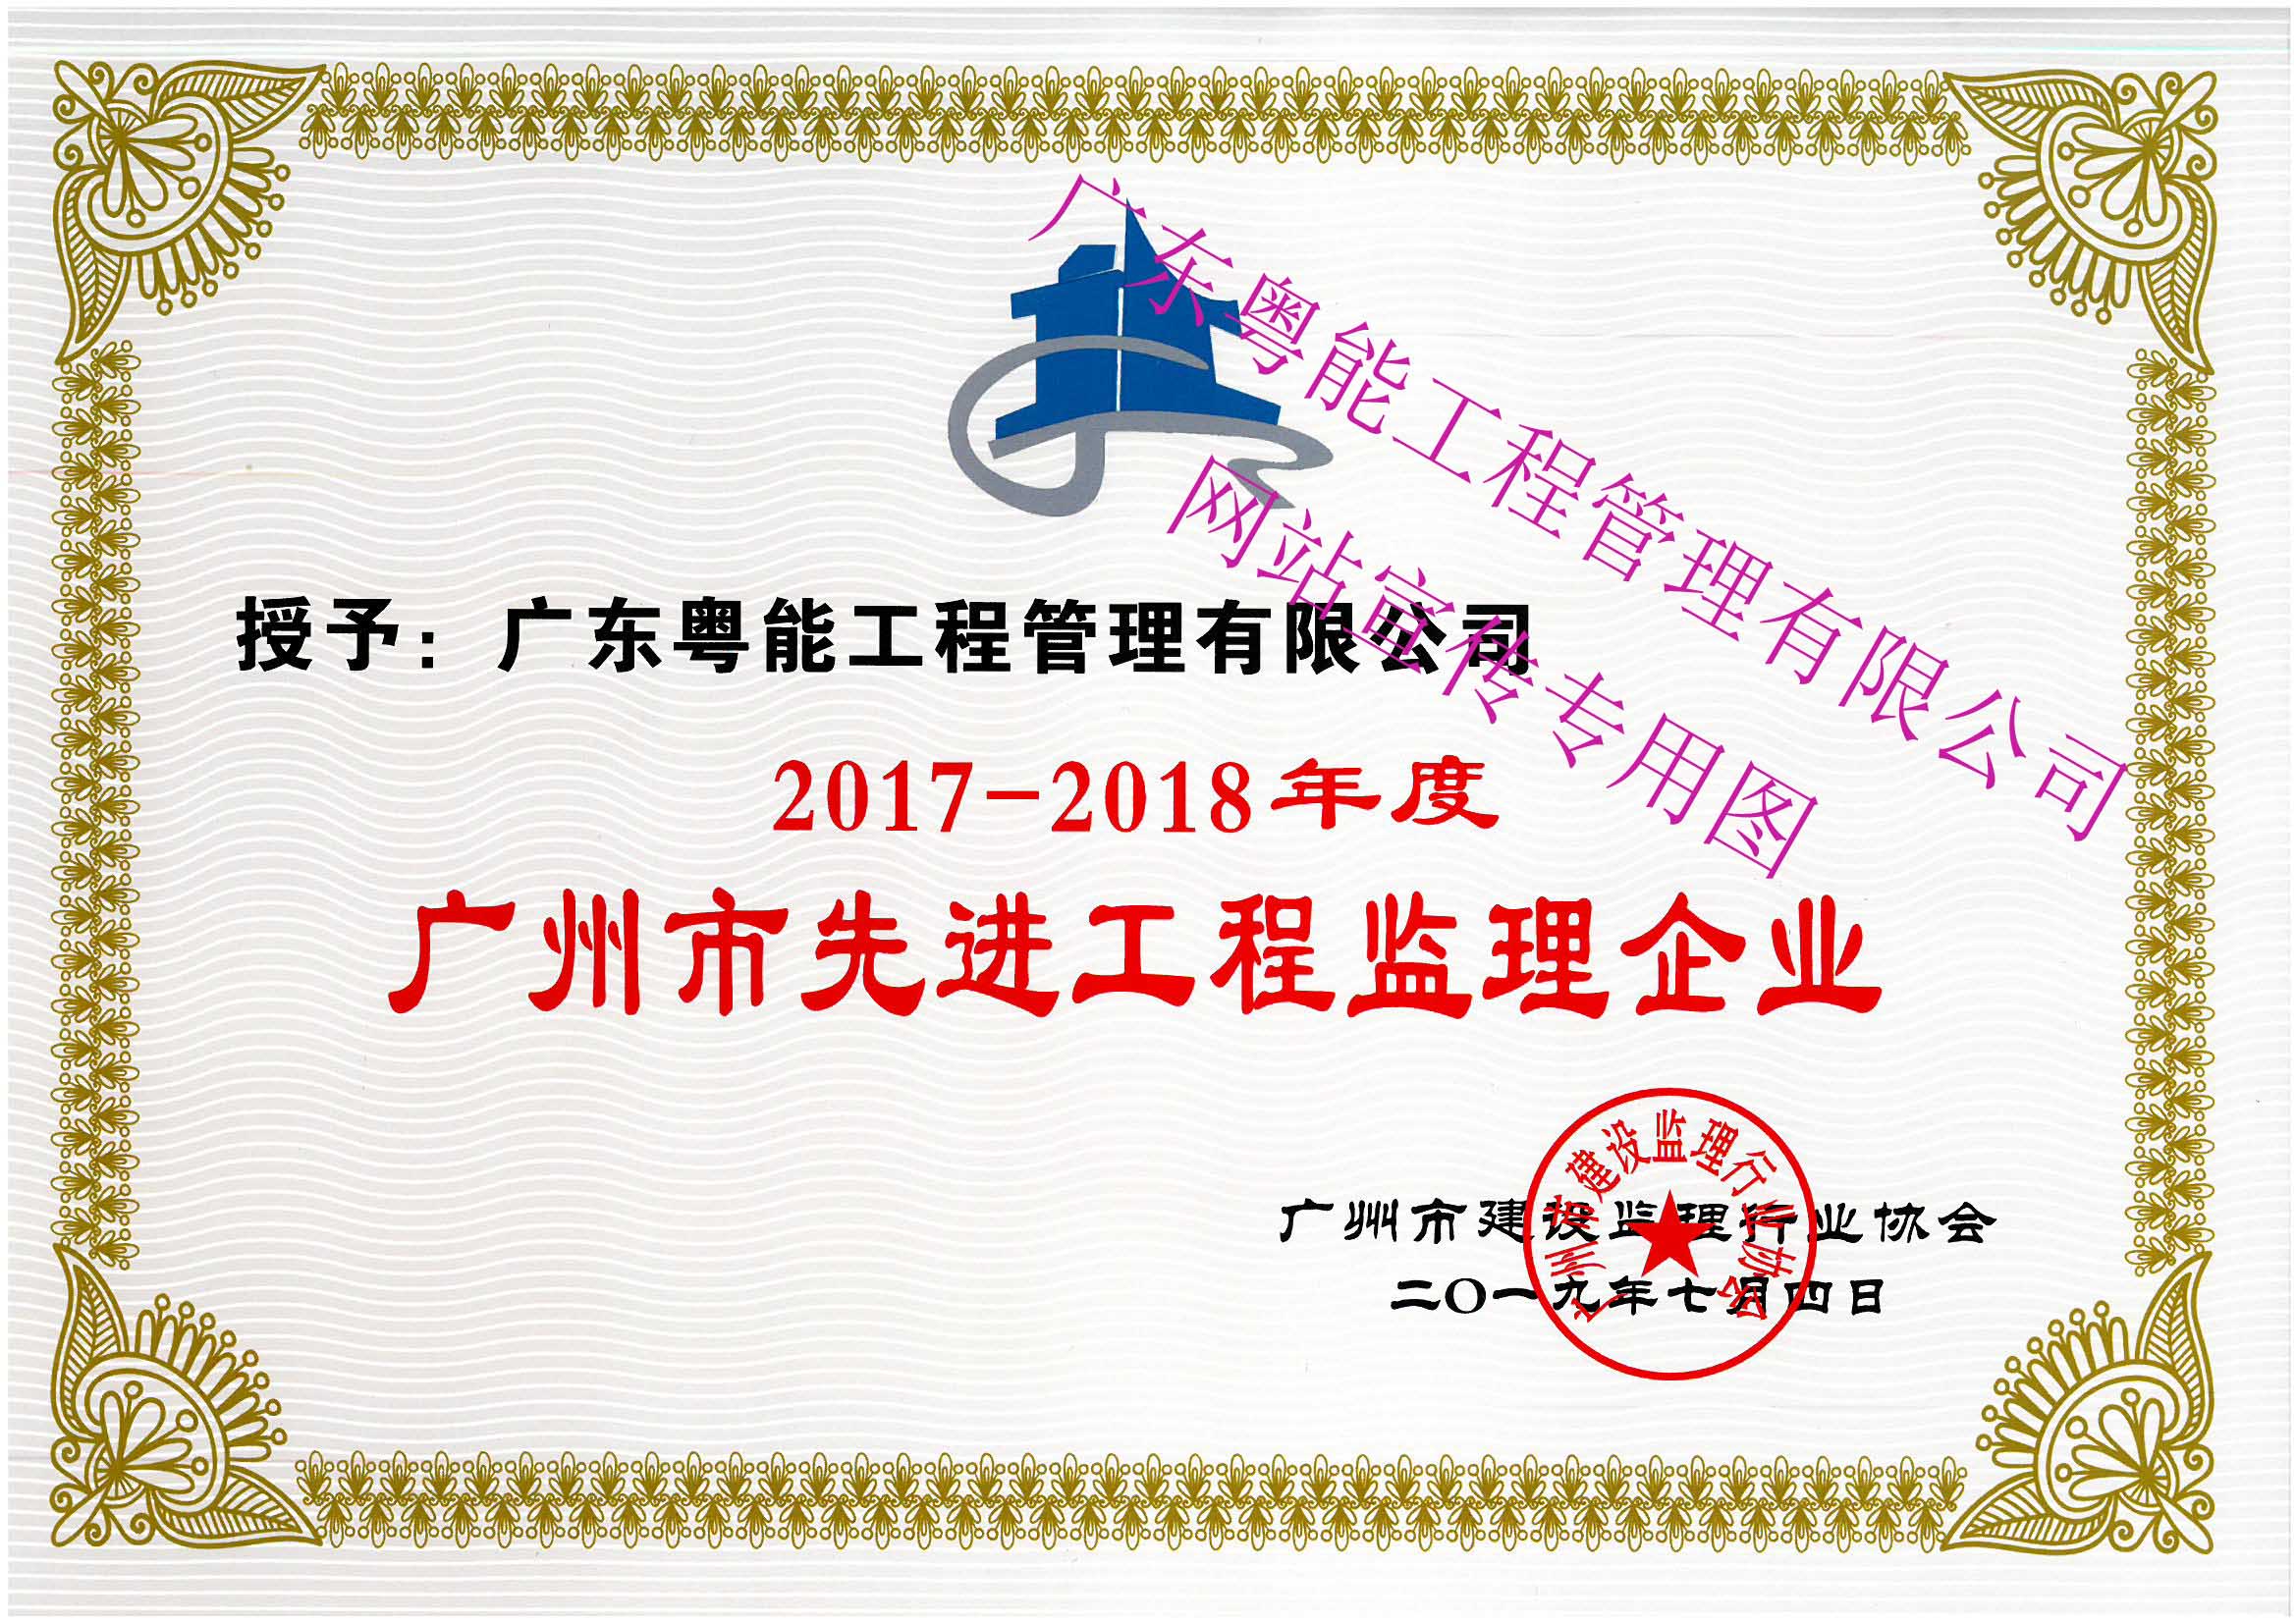 荣获2017-2018年度广州市先进工程监理企业